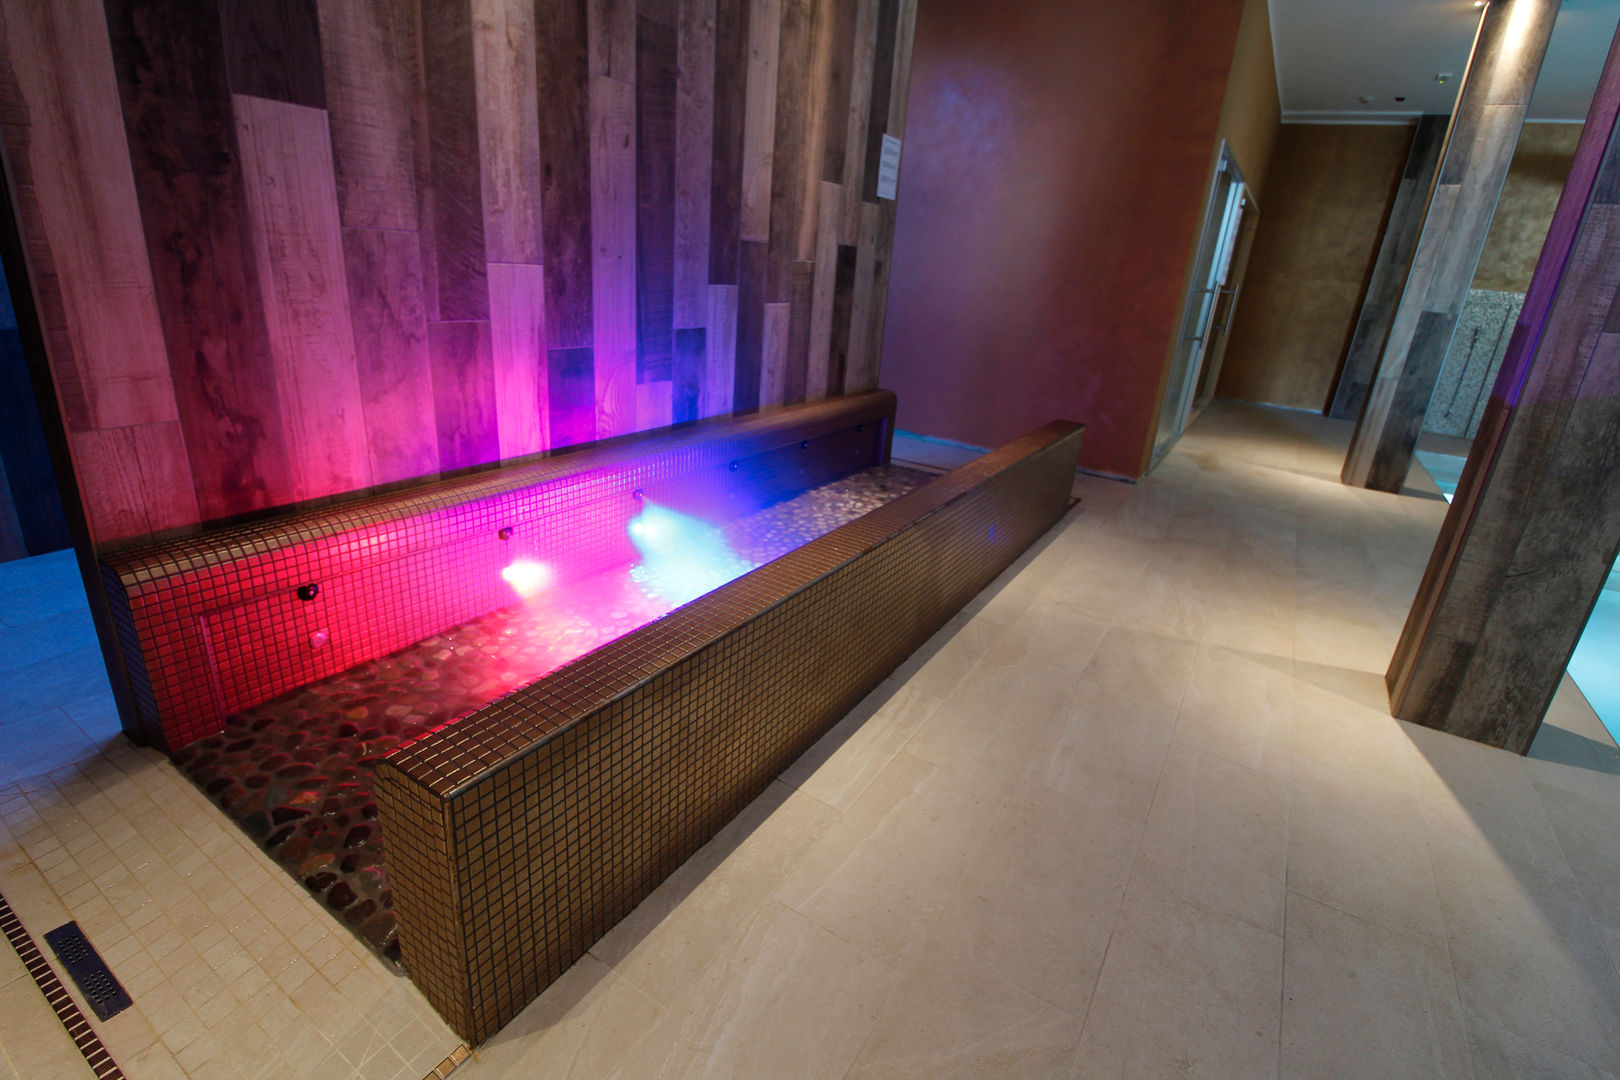 Centro Benessere completo di bagno turco , sauna , piscina riscaldata , percorso kneipp , docce o percorso emozionale., Aquazzura Piscine Aquazzura Piscine Espacios comerciales Hoteles